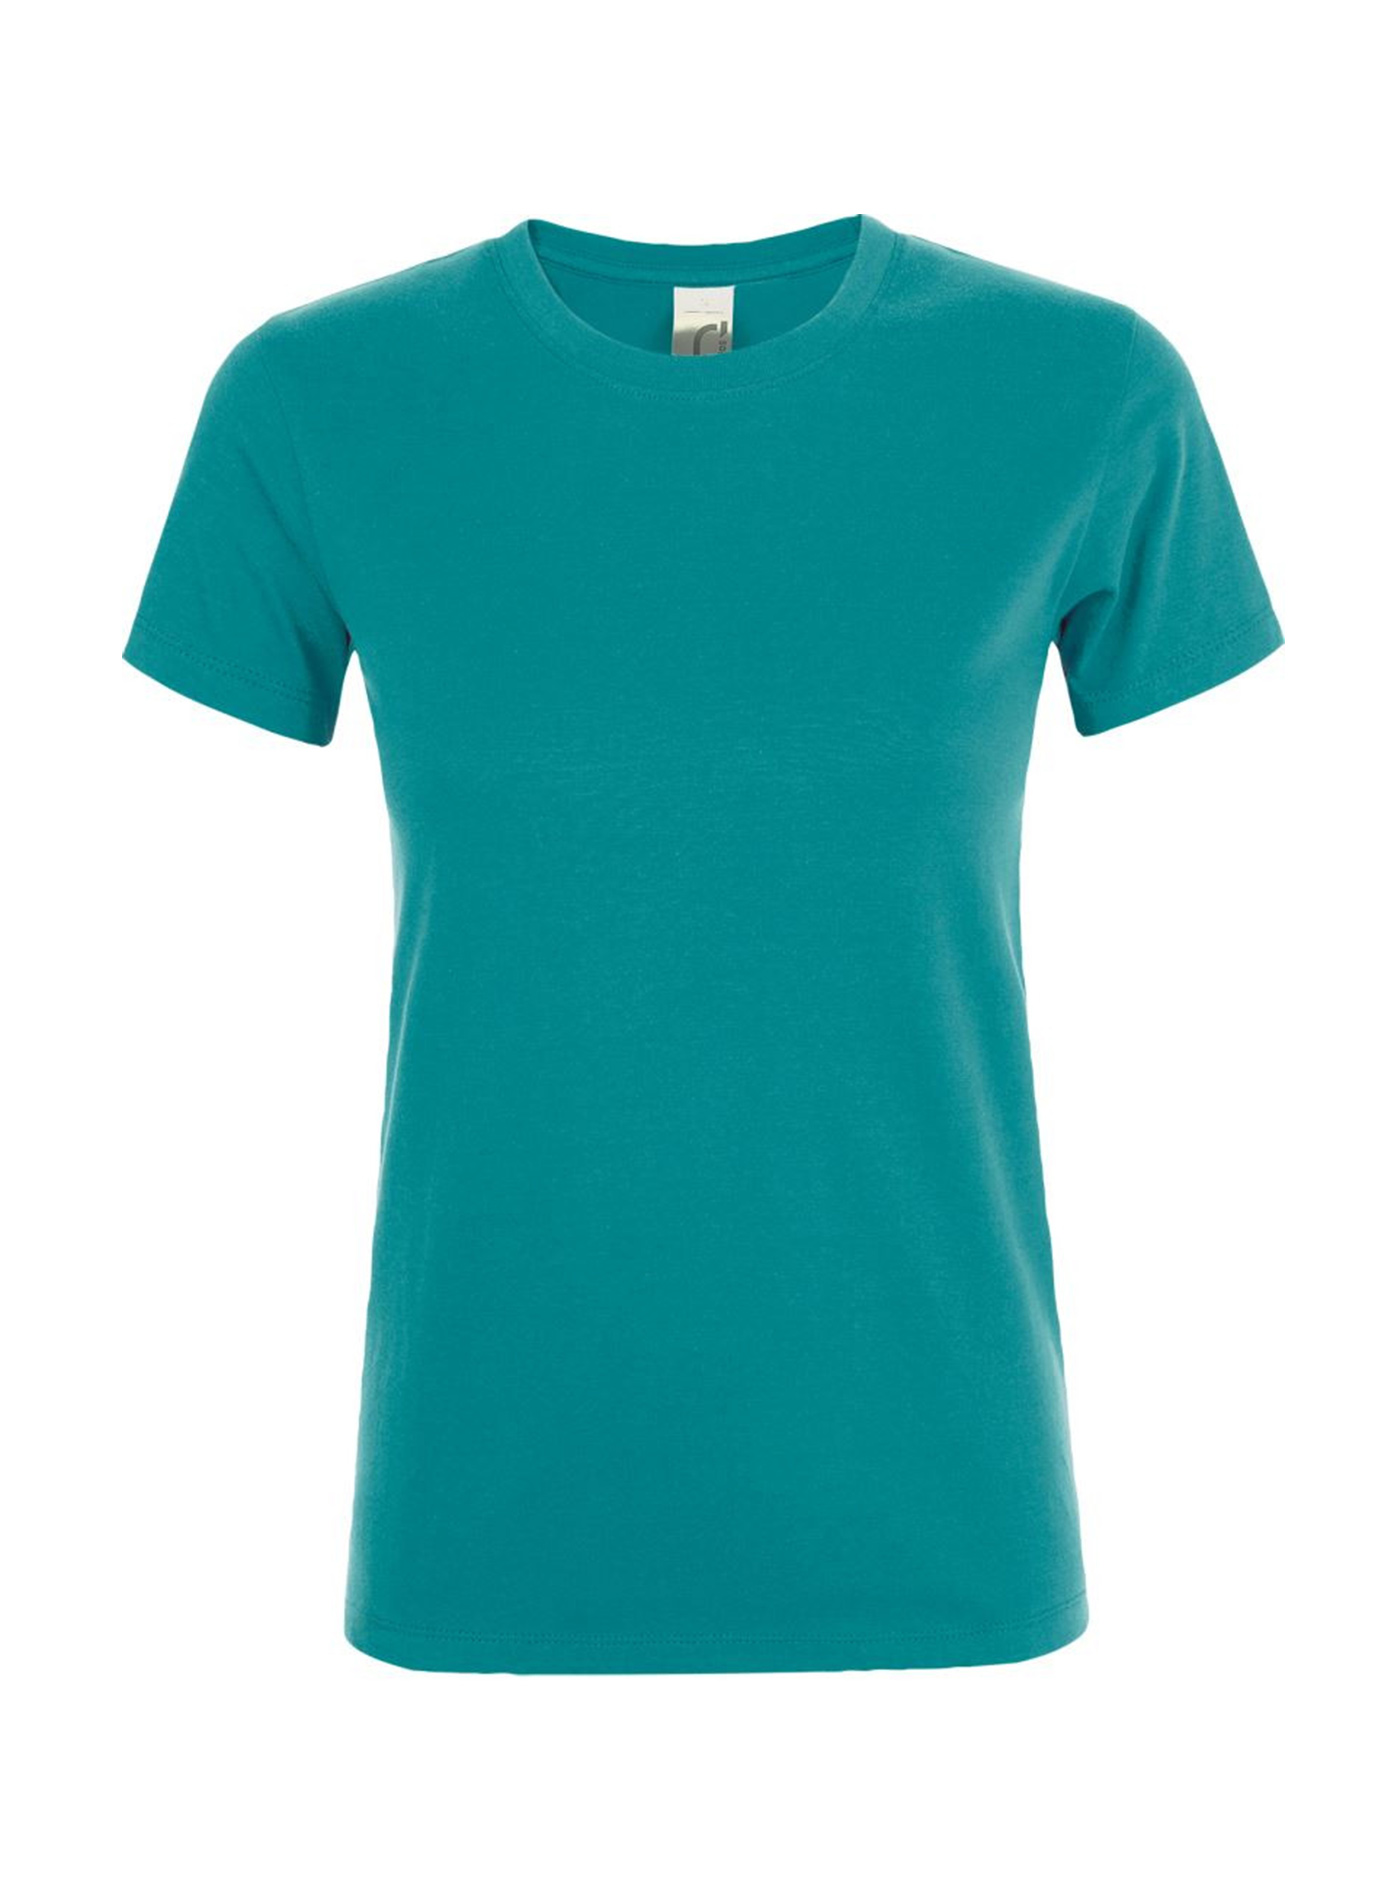 Dámské tričko SOL'S Regent - Tyrkysově modrá XXL